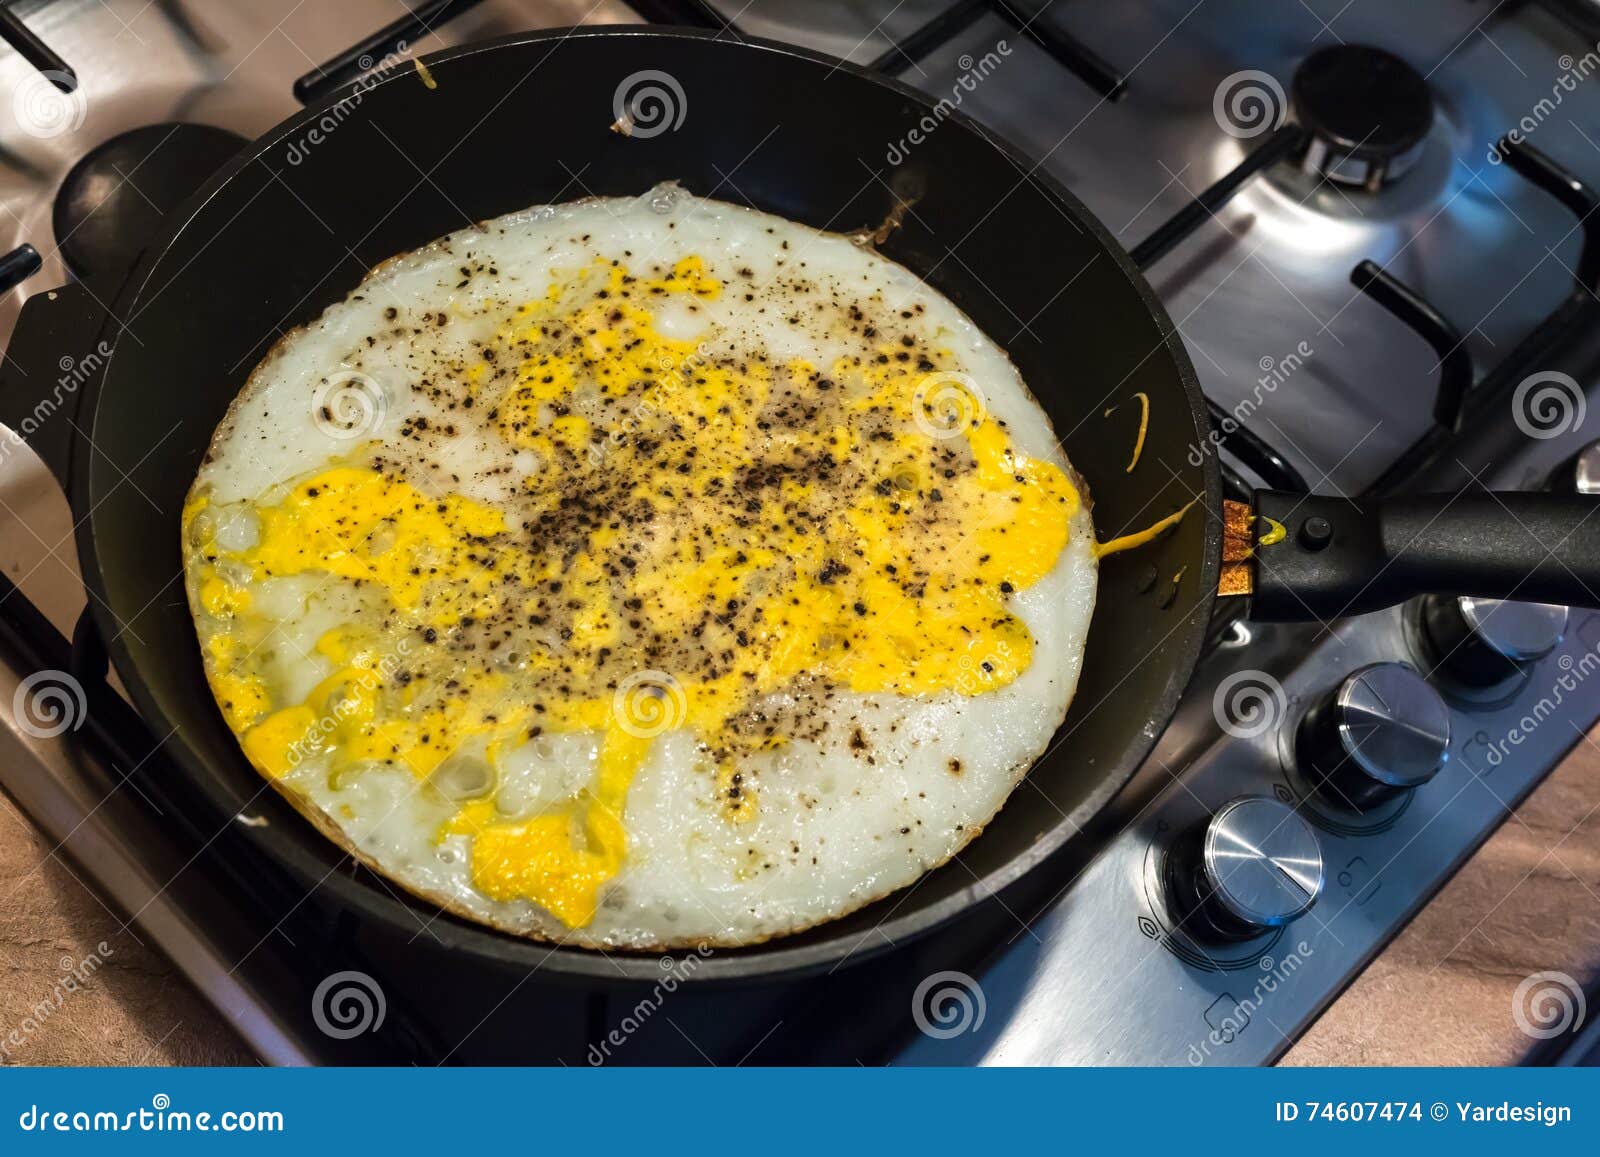 Frying an OSTRICH egg : r/pics